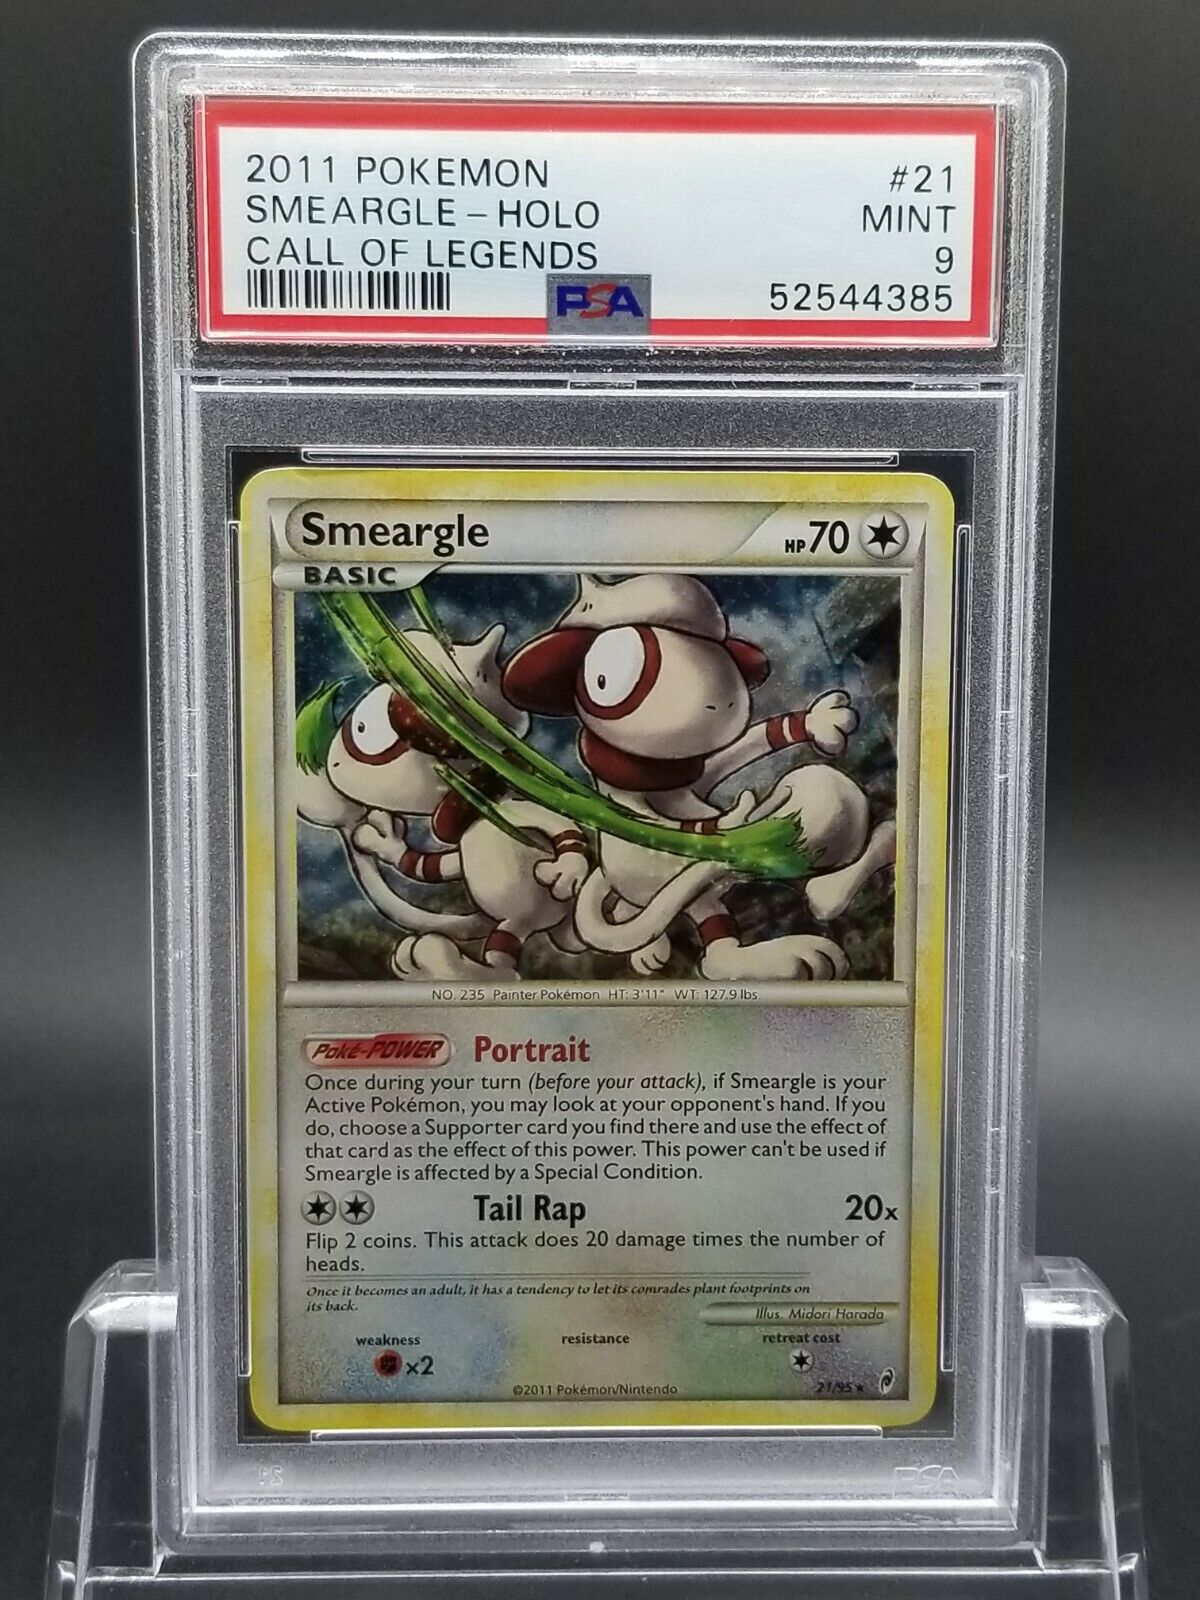 PSA 9 MINT Smeargle Call of Legends Holo Pokemon Card 21/95 Specjalna cena z natychmiastową dostawą